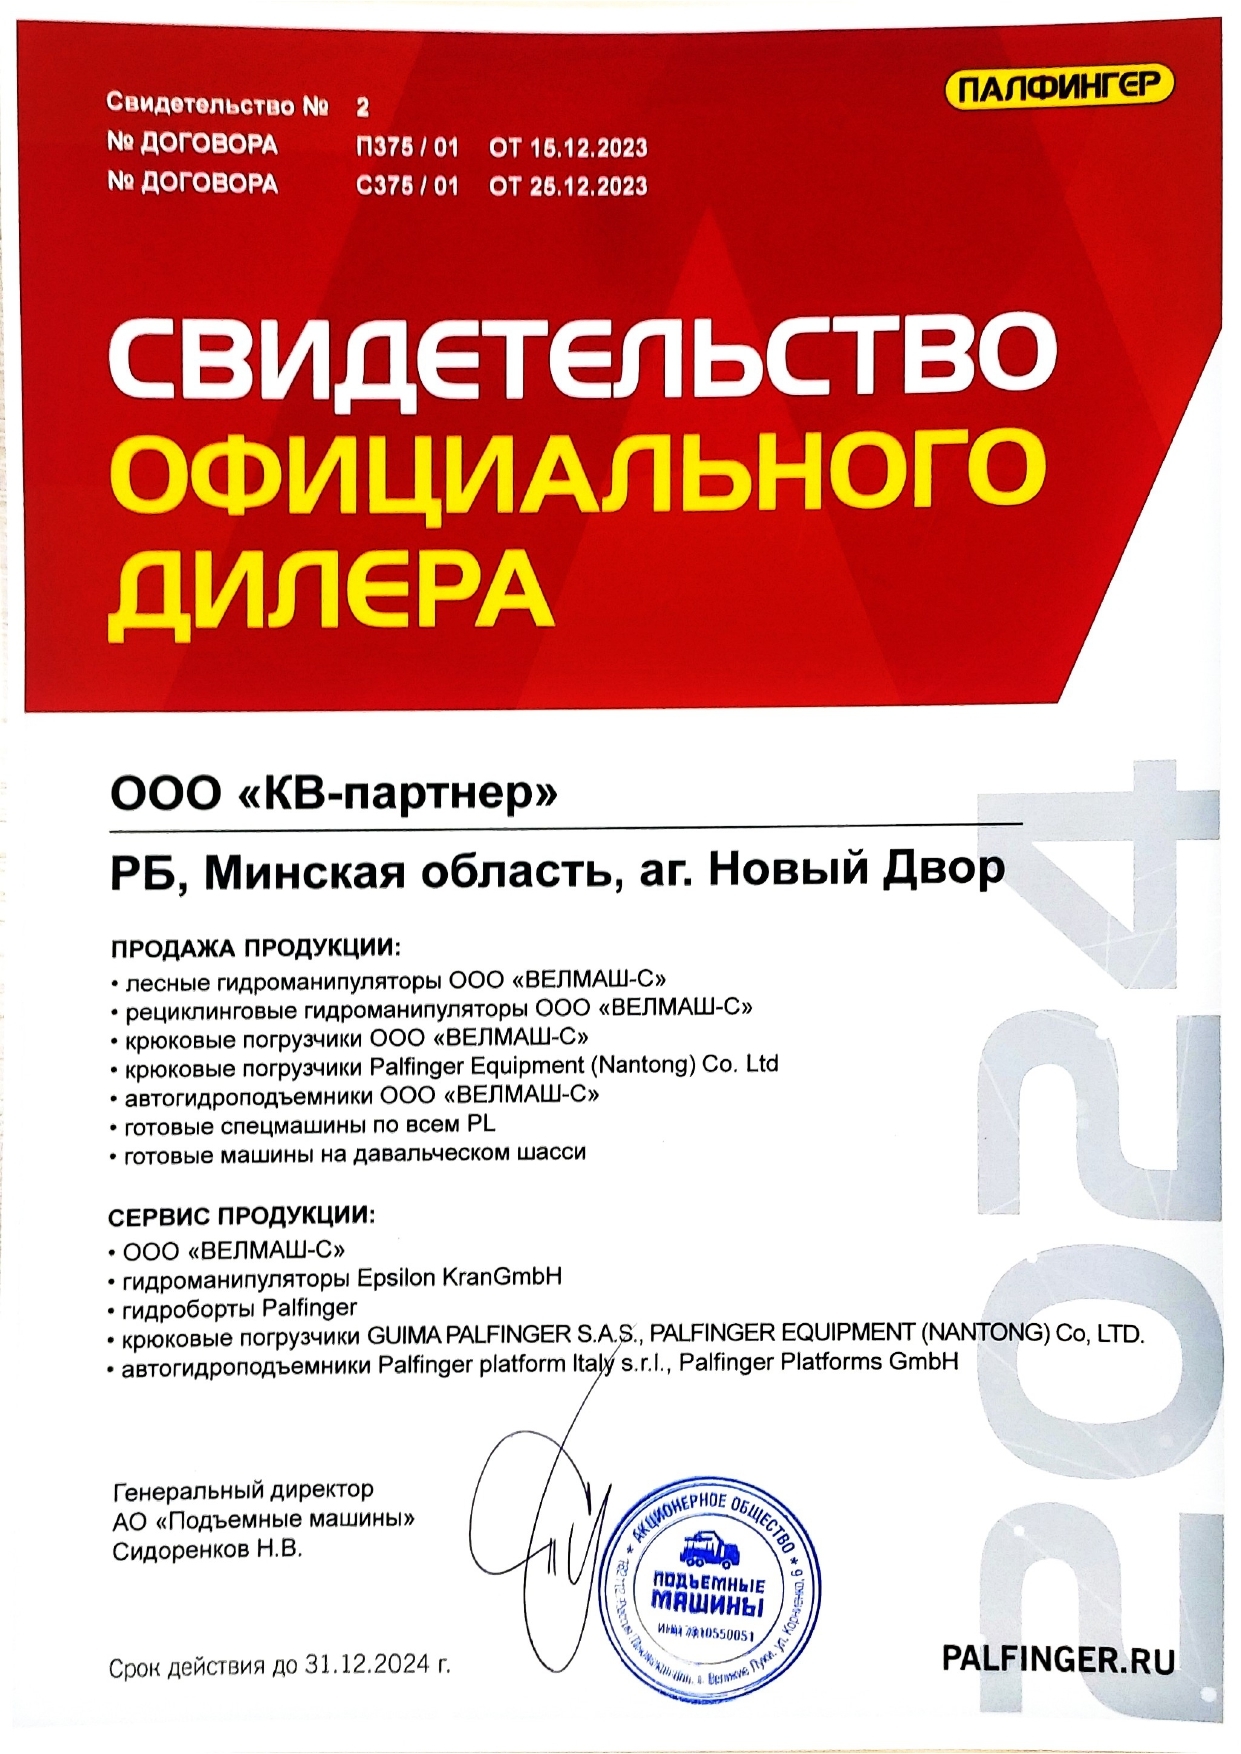 Сертификат дилера "Подъемные машины" 2024